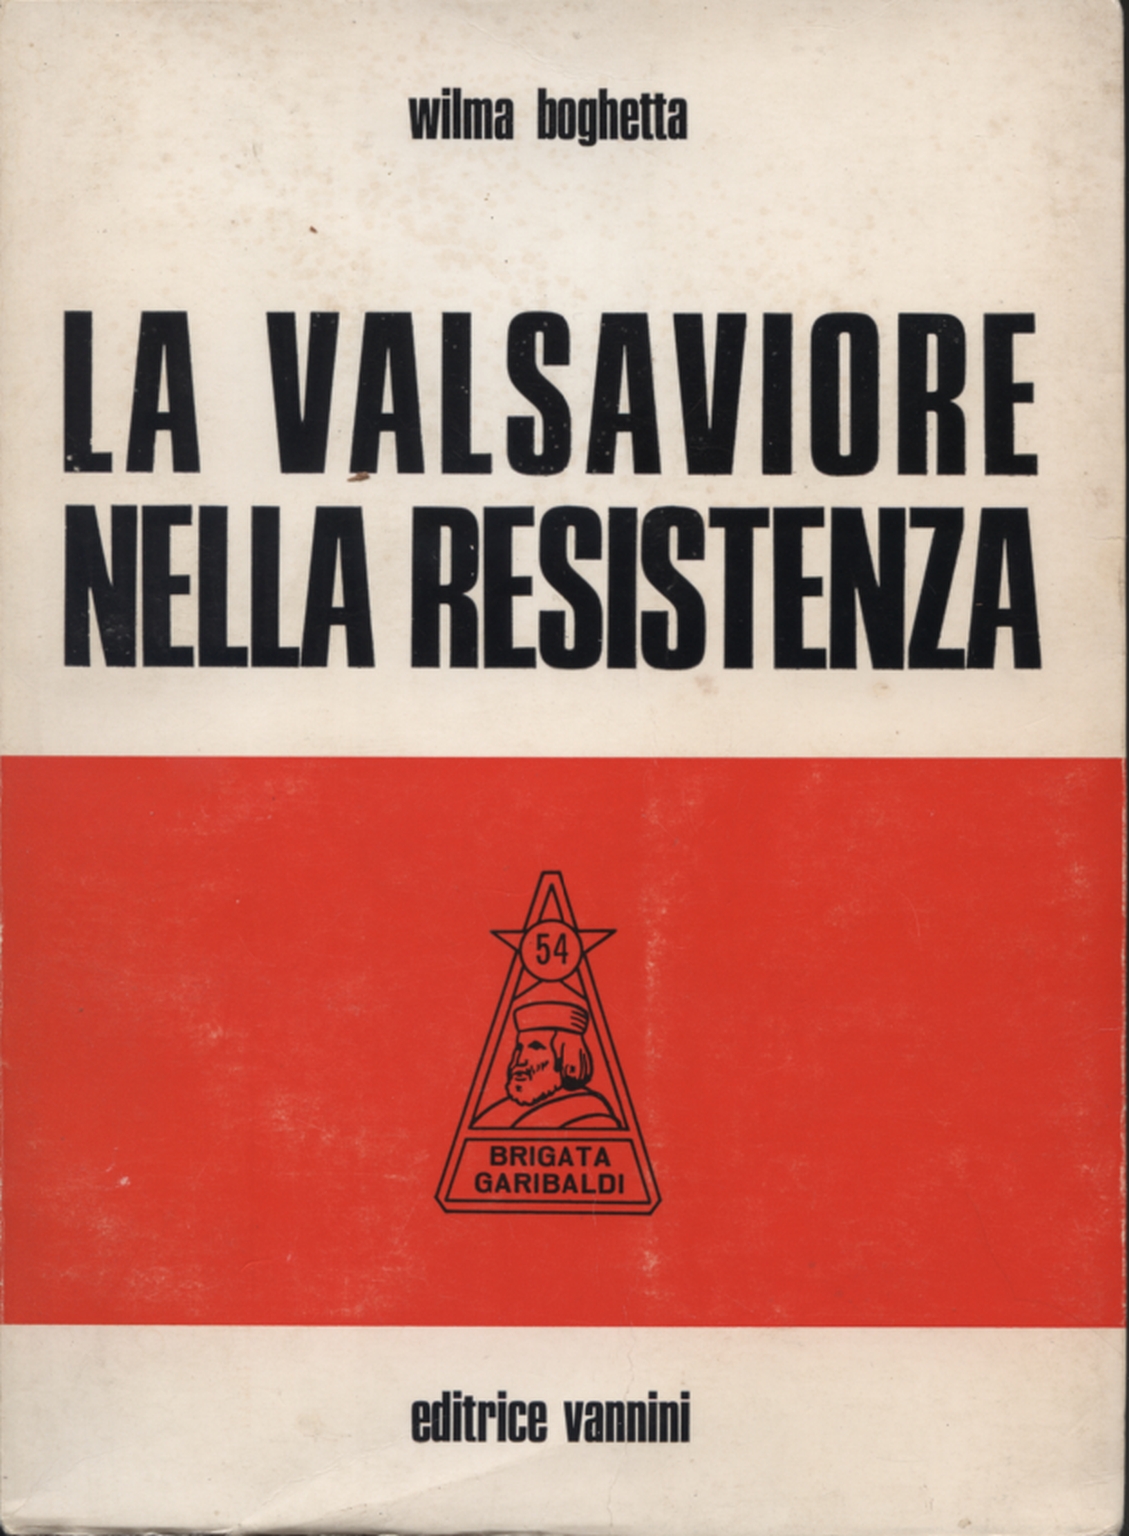 El Valsaviore en la resistencia, Wilma Boghetta